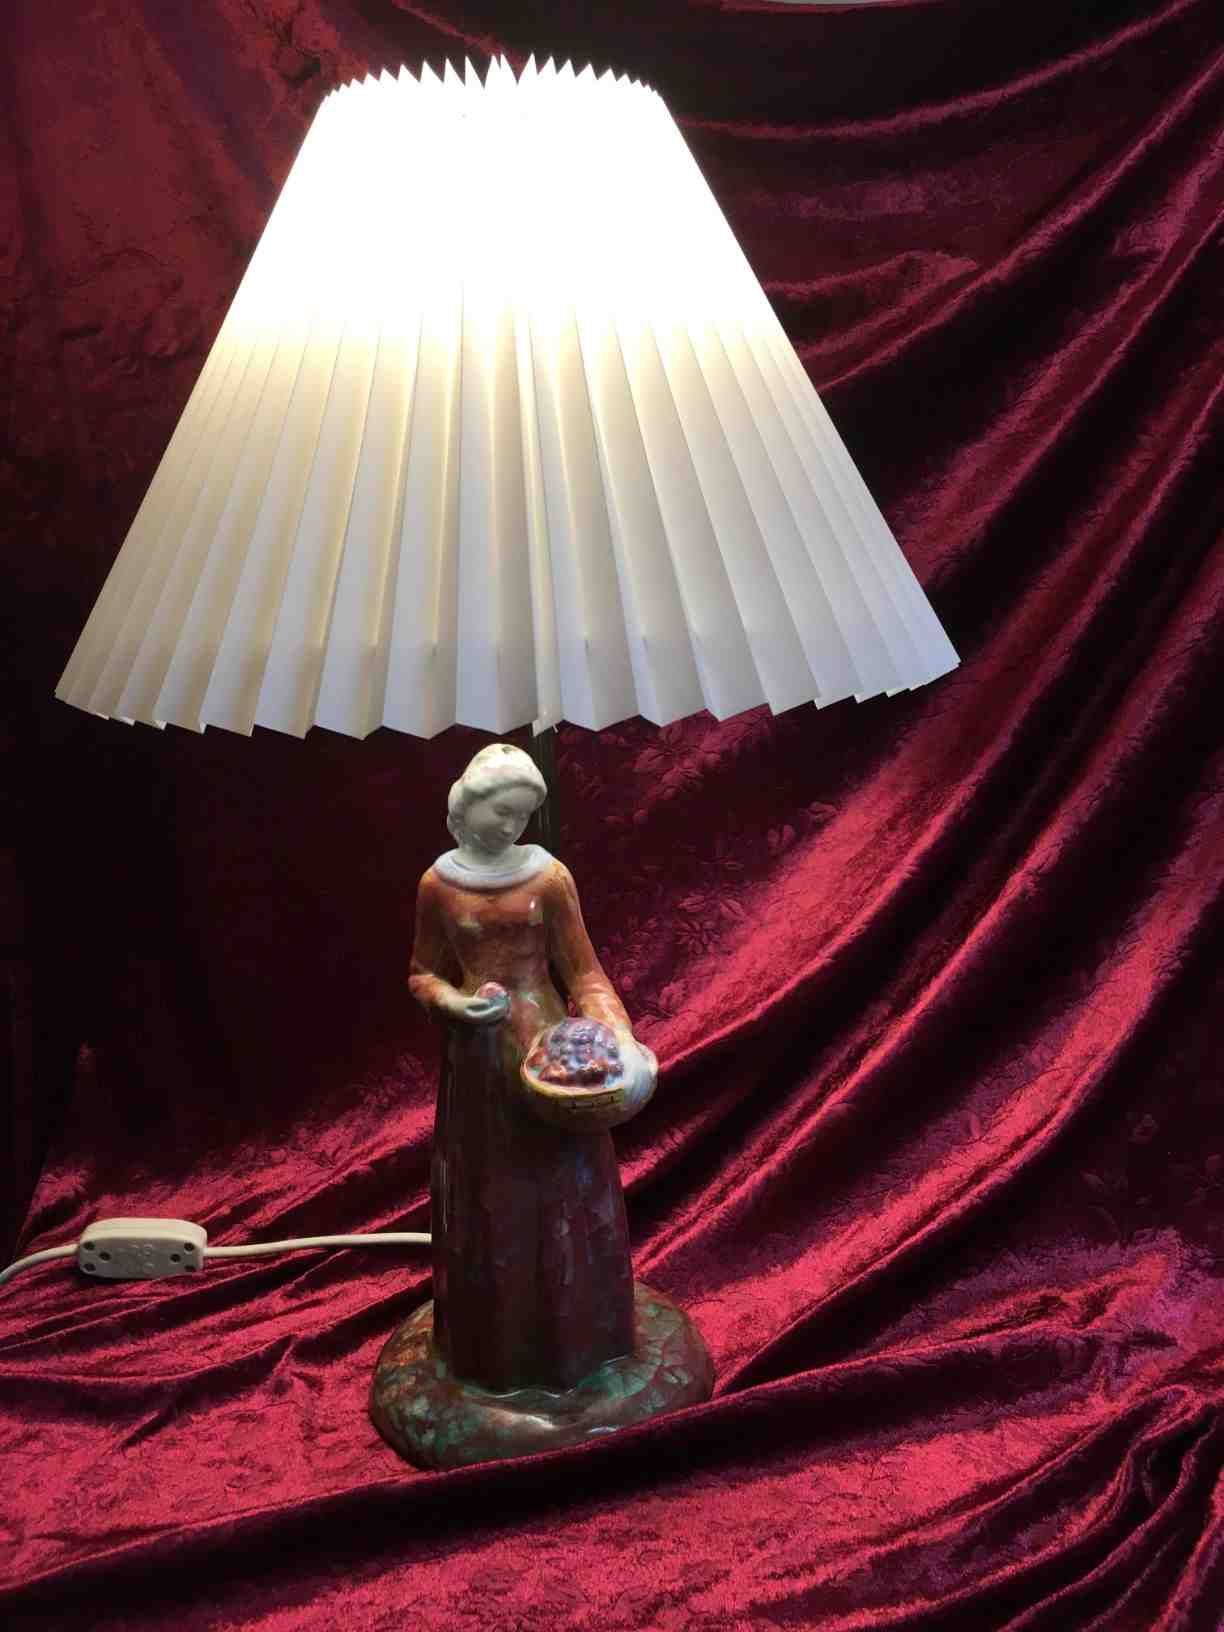 Michael Andersen Bordlampe, prydet med kvinde, keramik, med Persiaglasur, lampestamme af bruneret messing, plisseret skærm, totalhøjde 53 cm. I perfekt stand. Pris: 1.000,- Kr.